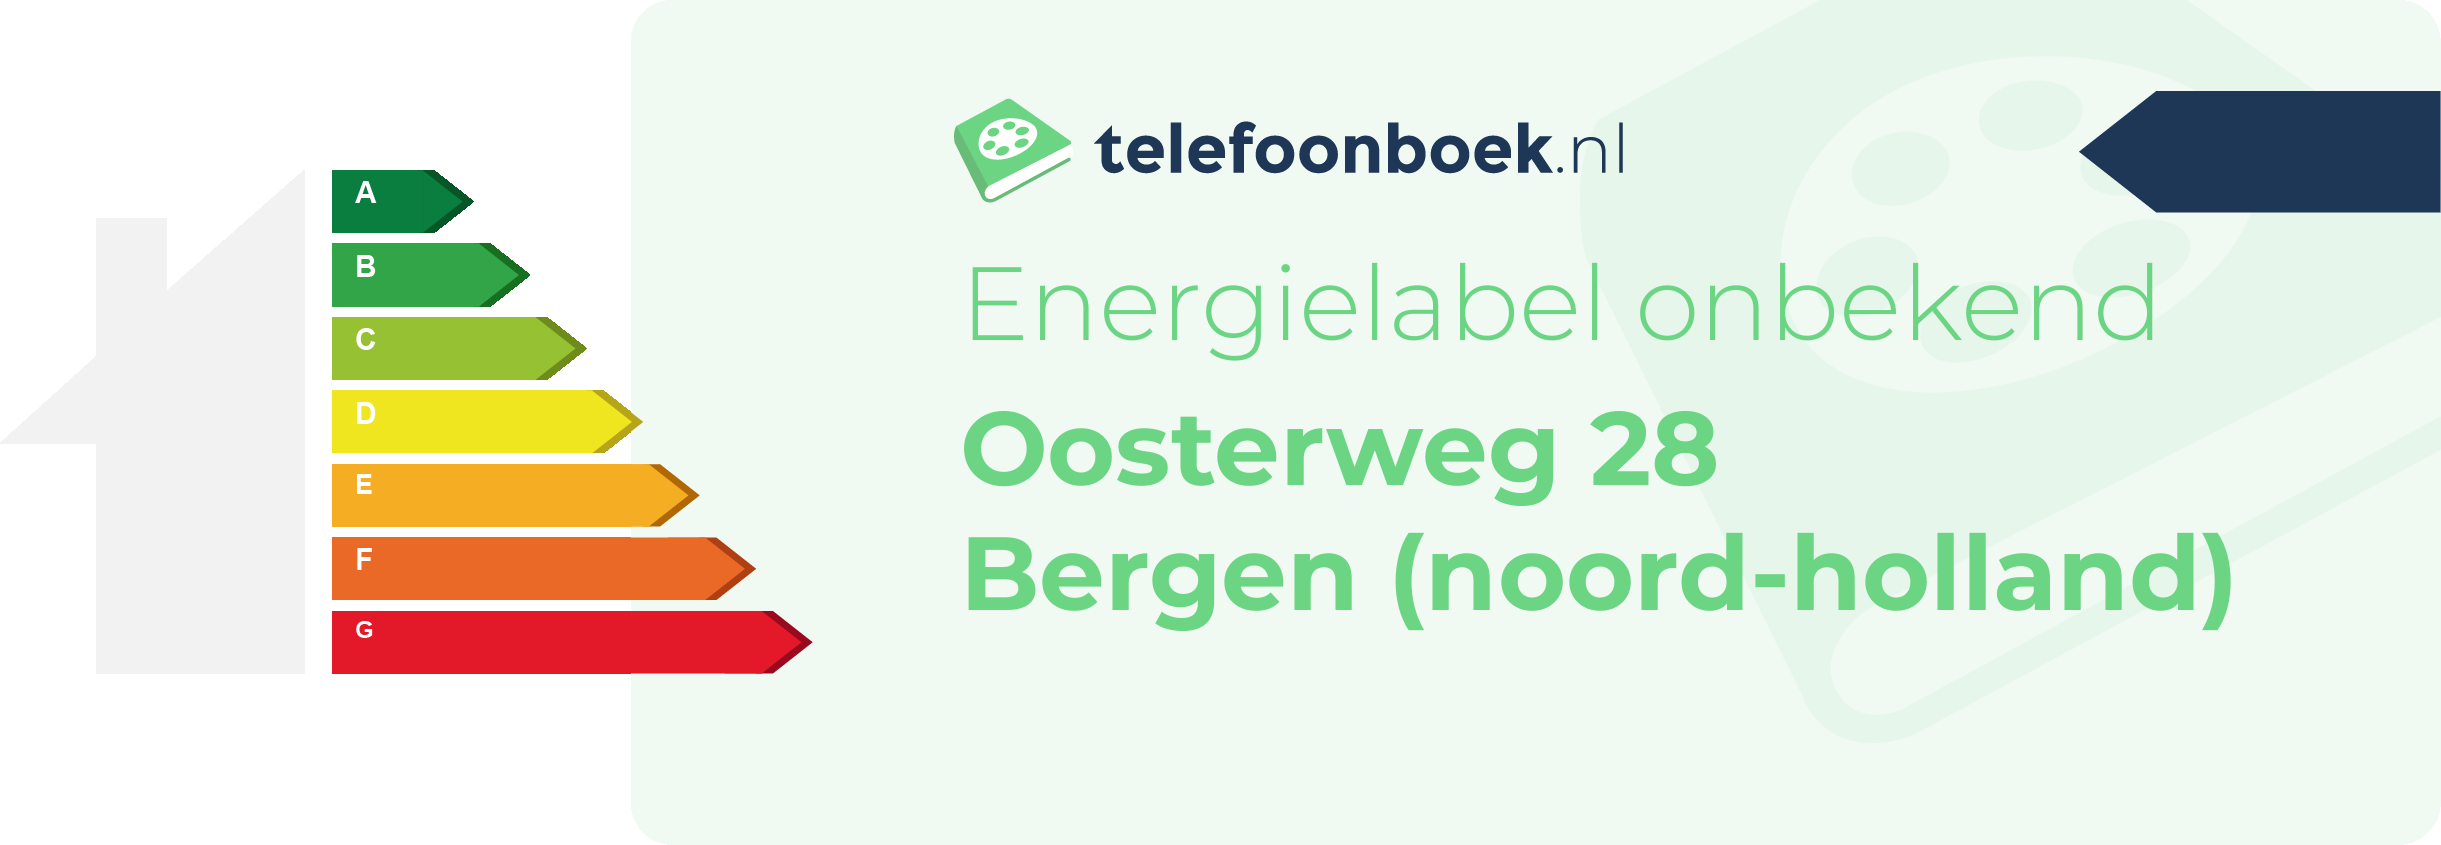 Energielabel Oosterweg 28 Bergen (Noord-Holland)